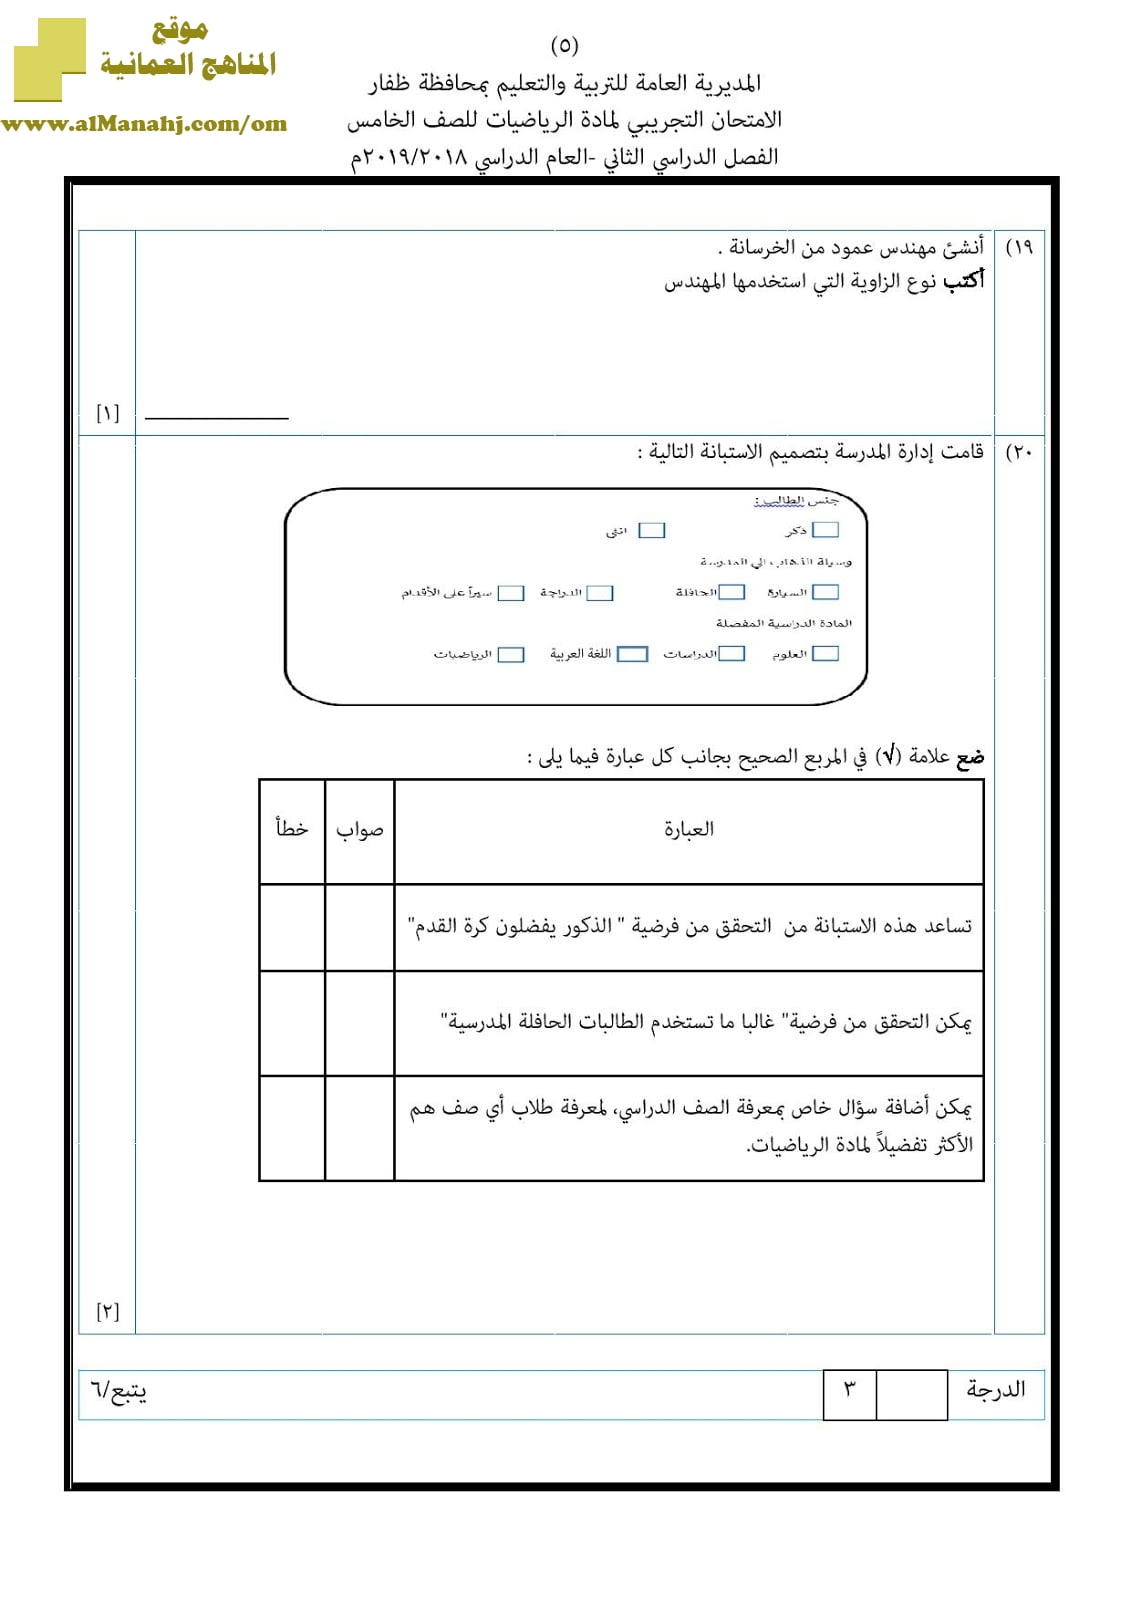 أسئلة الامتحان التجريبي في محافظة ظفار للفصل الدراسي الثاني (رياضيات) الخامس